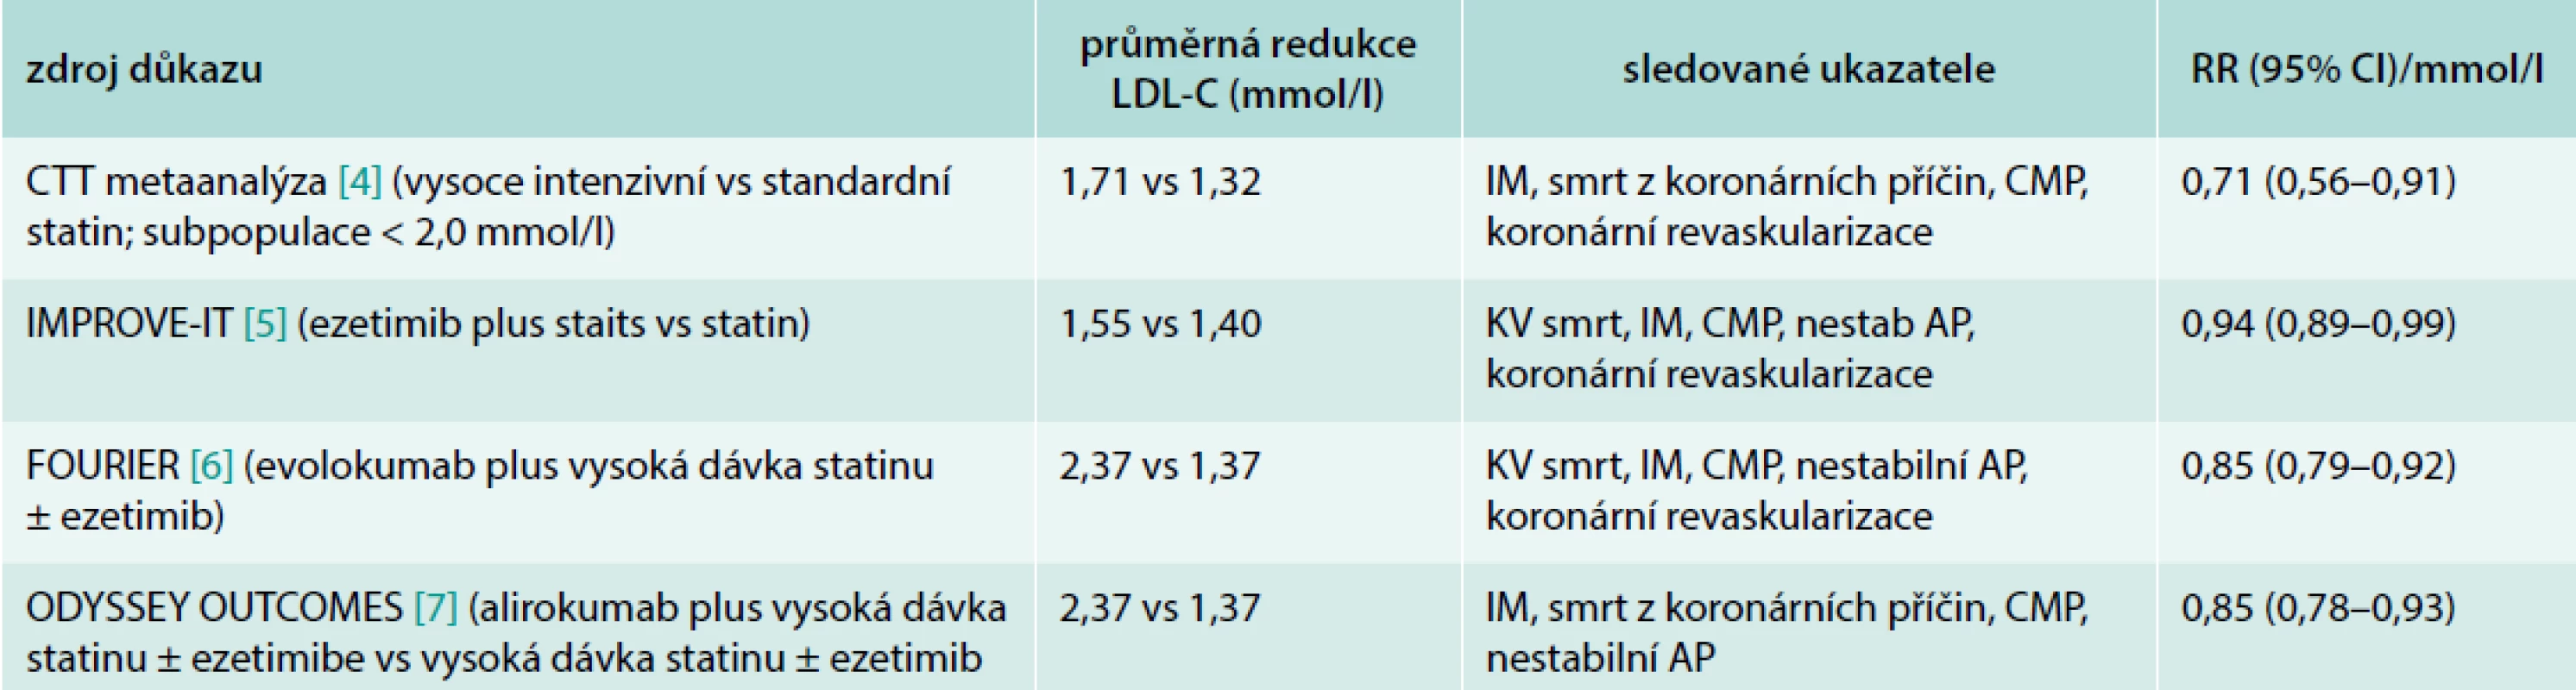 Evidence pro prospěšnost snižování LDL-C k hodnotě 1,4 mmol/l. Upraveno podle [4–7]